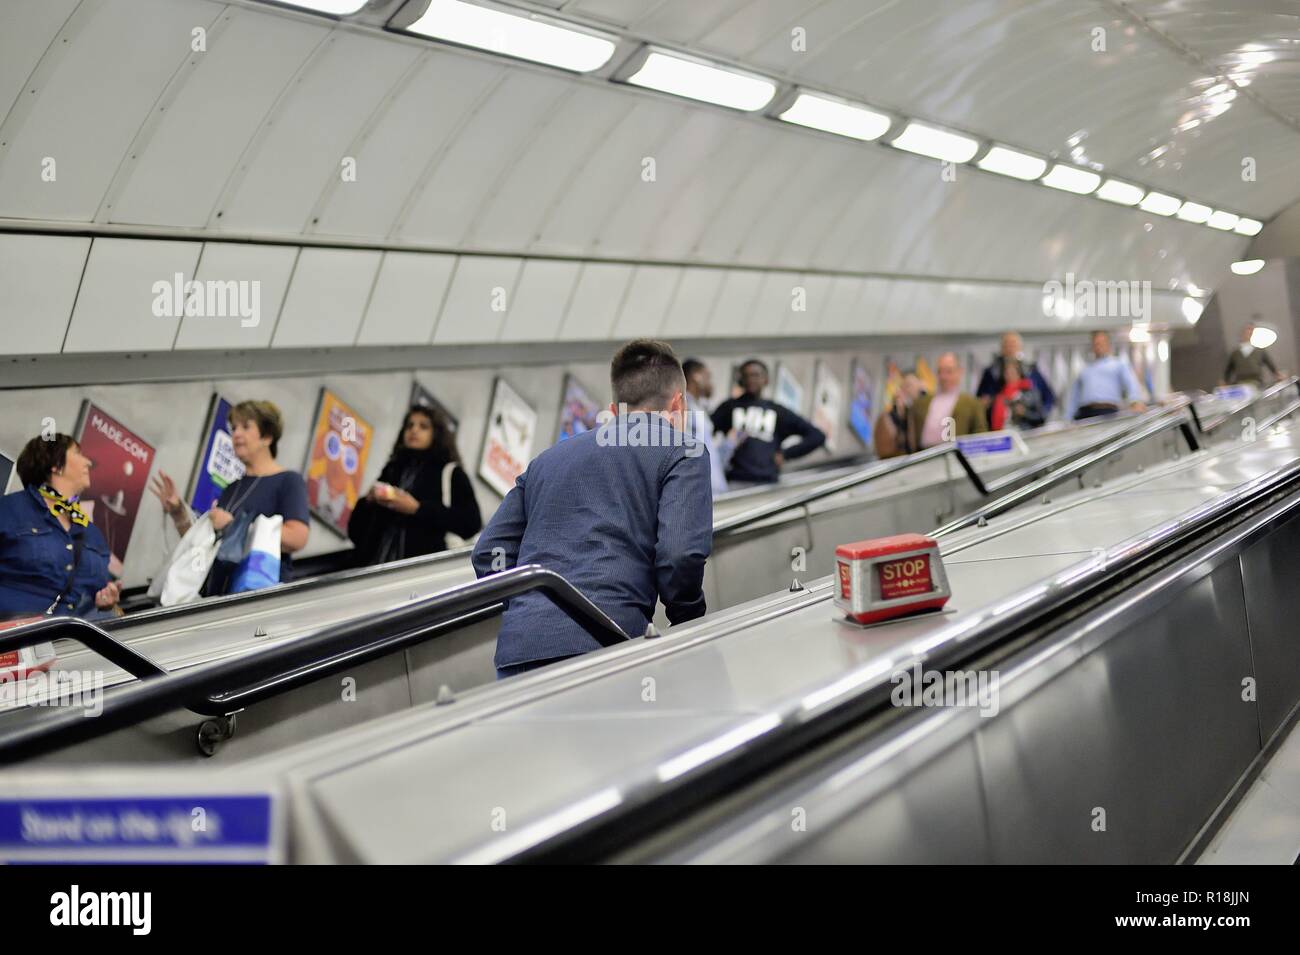 Londra, Inghilterra, Regno Unito. Almeno una persona sceglie di fare la lunga passeggiata su per le scale mentre altri giro le scale mobili. Foto Stock